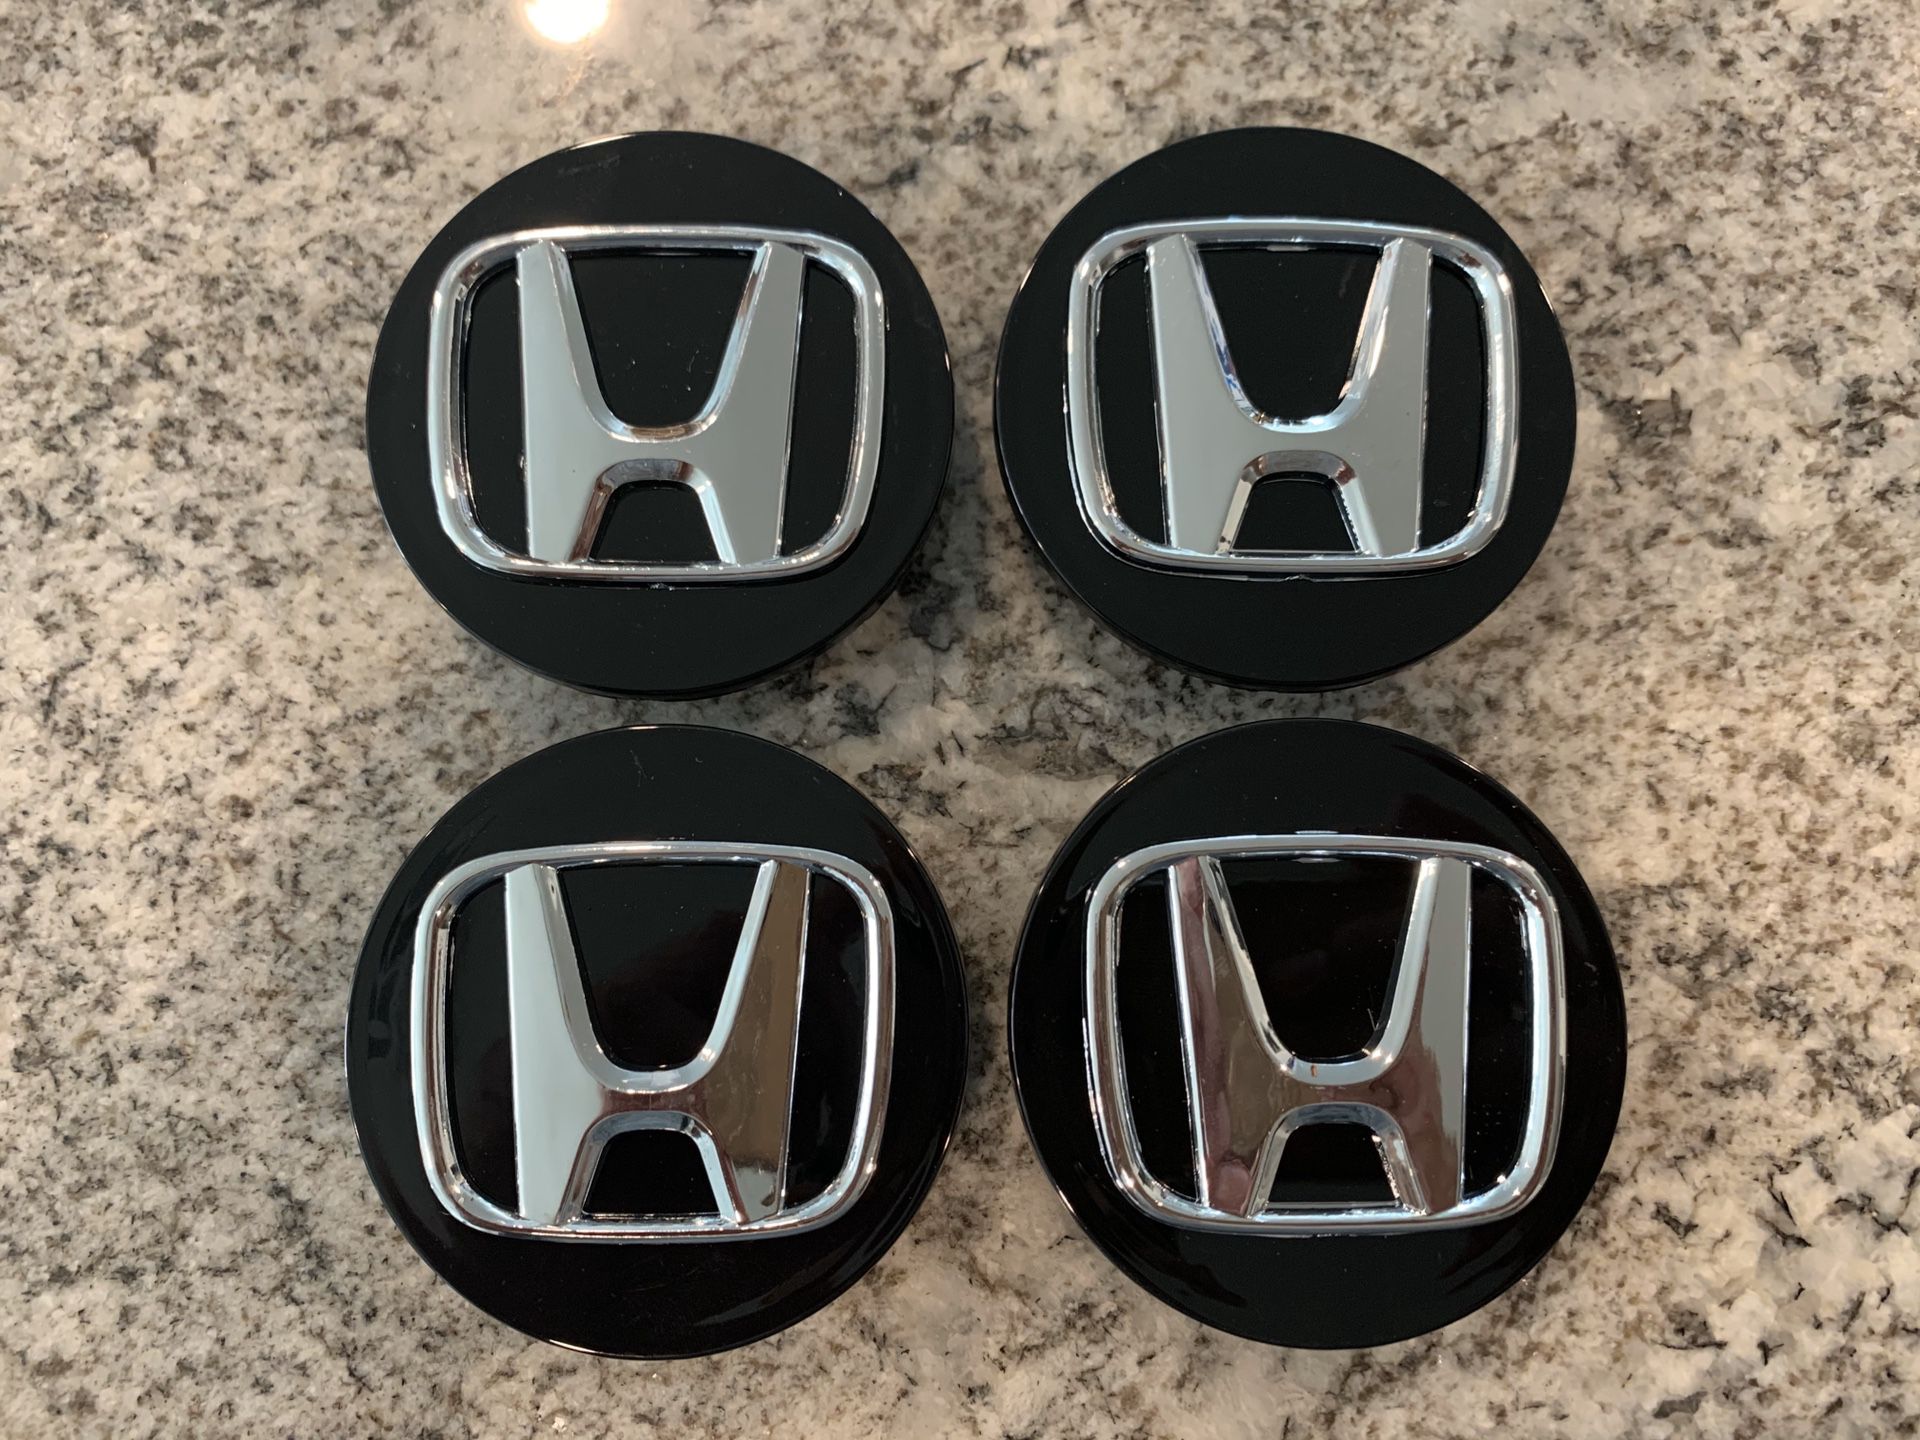 4 New Honda Oem Center Caps For Civic Crv All Makes Honda